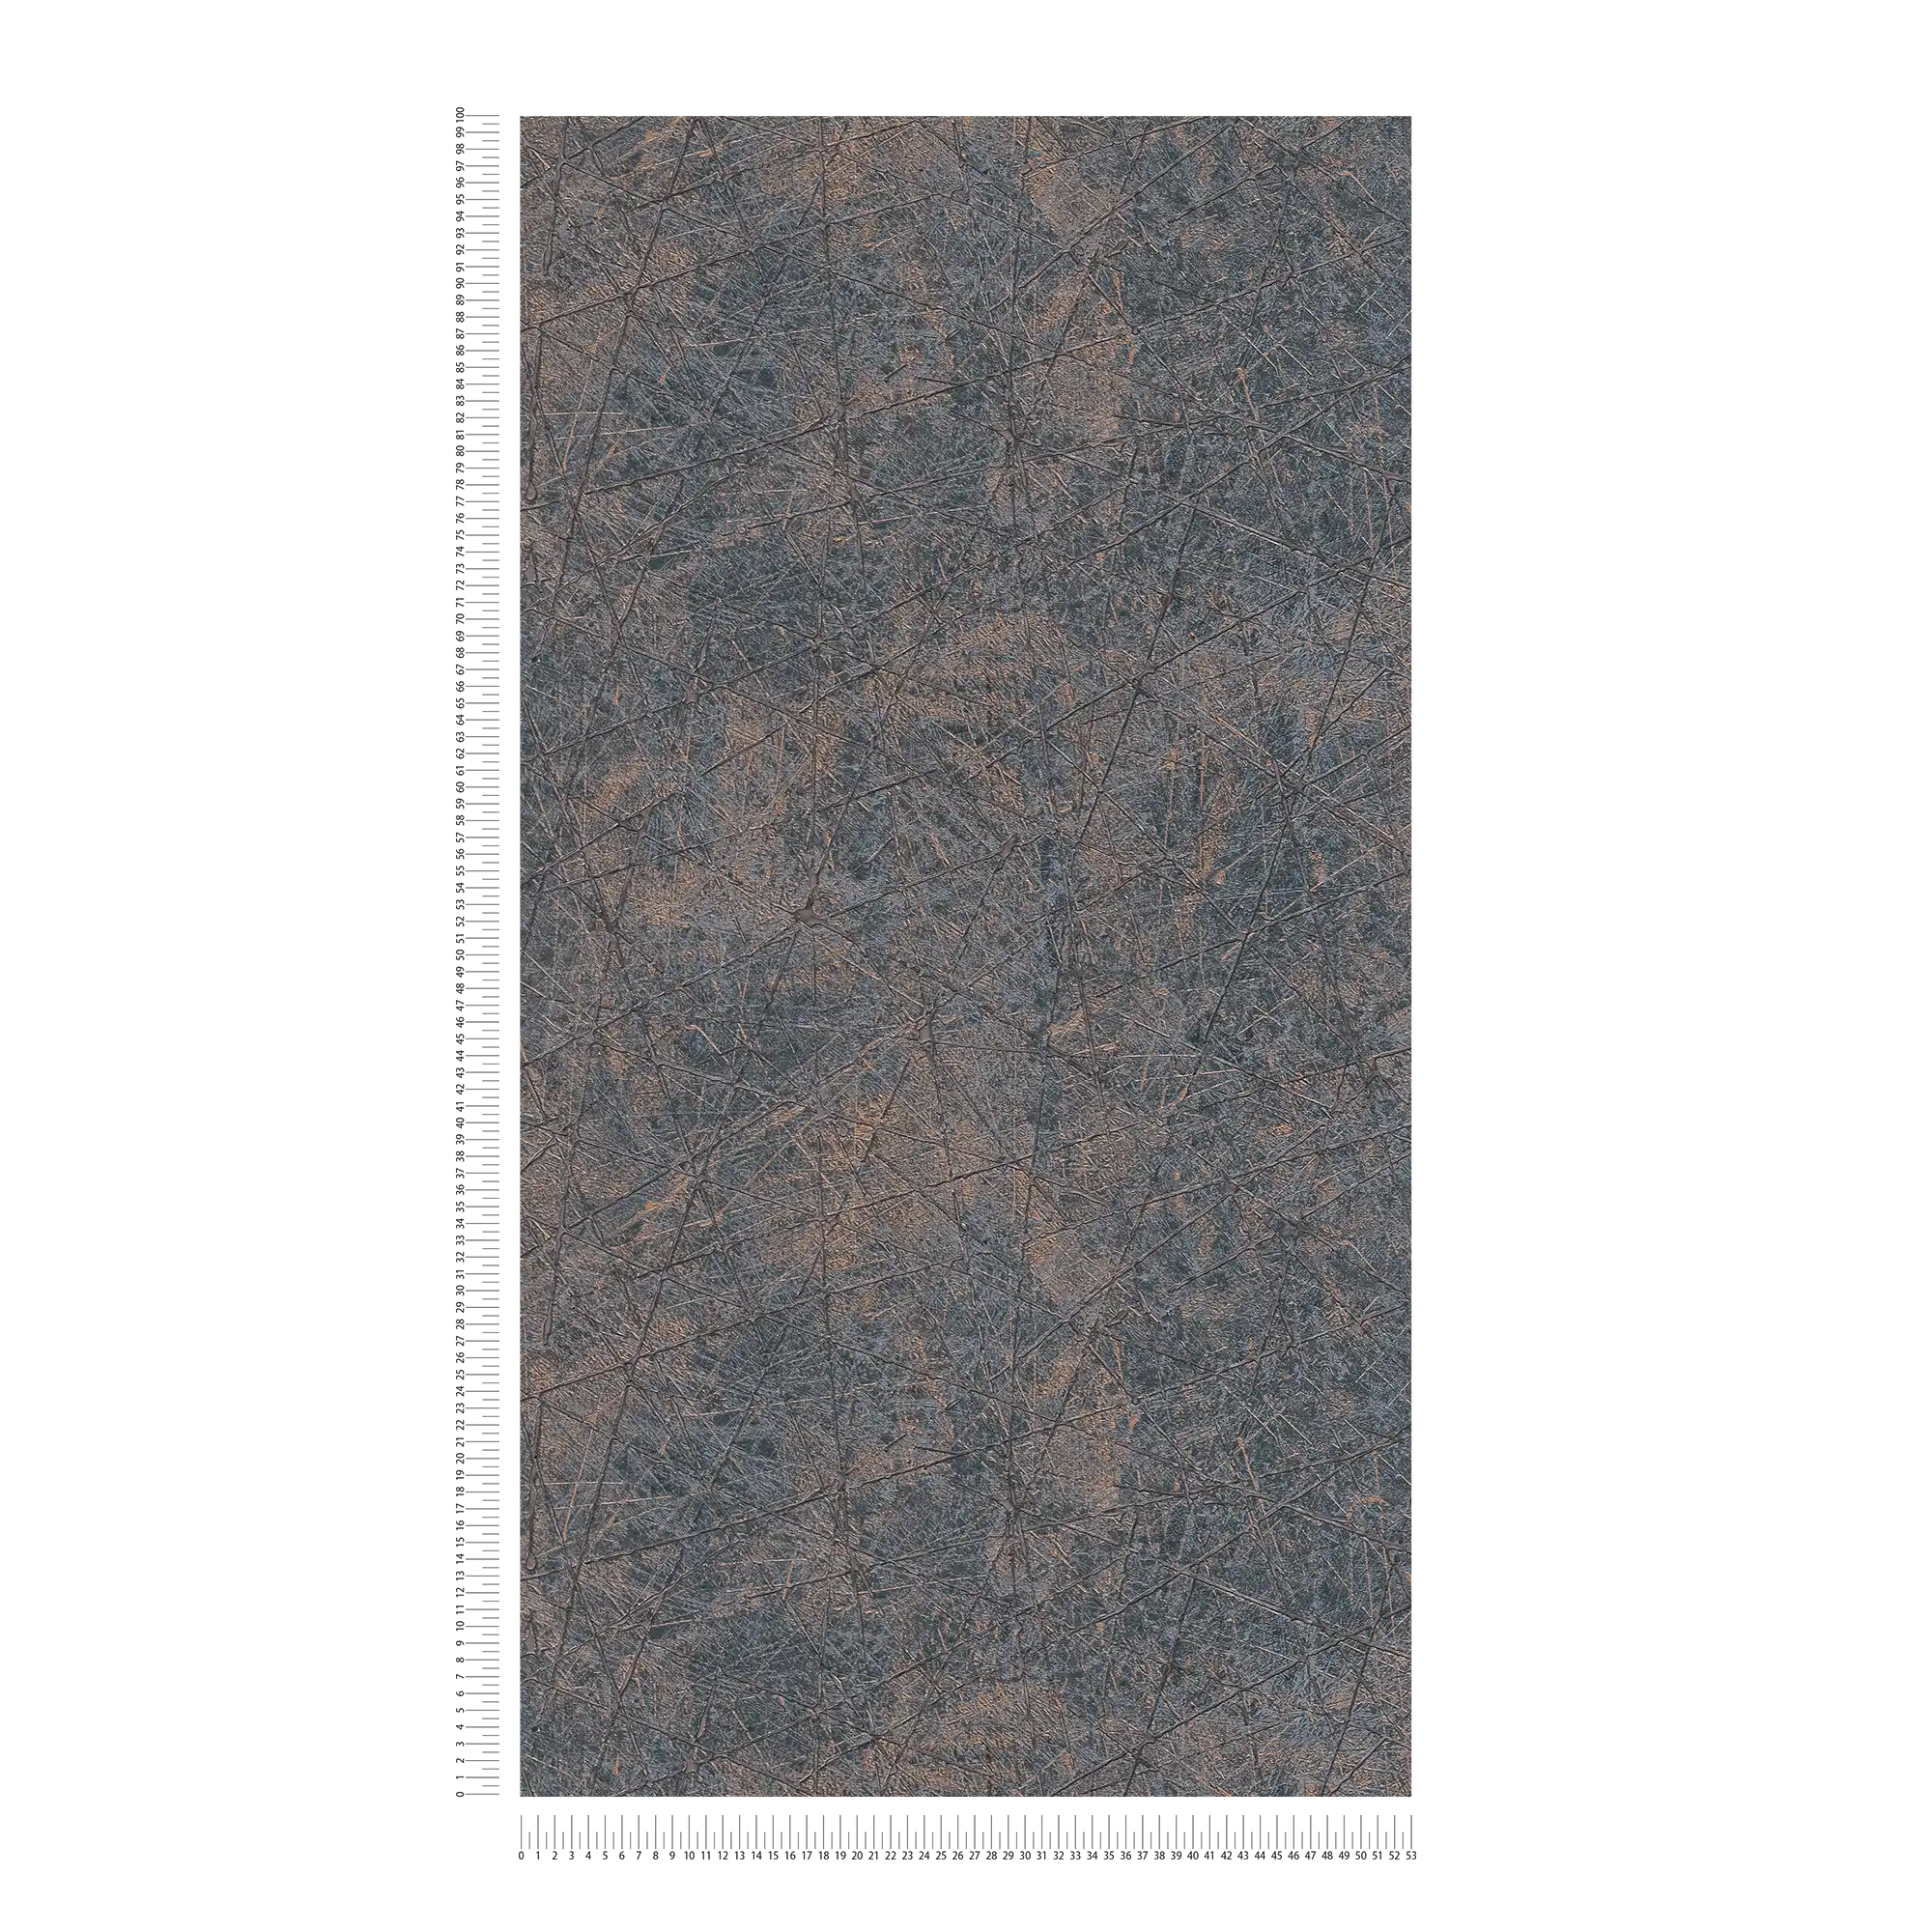             Carta da parati in tessuto non tessuto effetto metallizzato con motivo grafico a linee - nero, bronzo
        